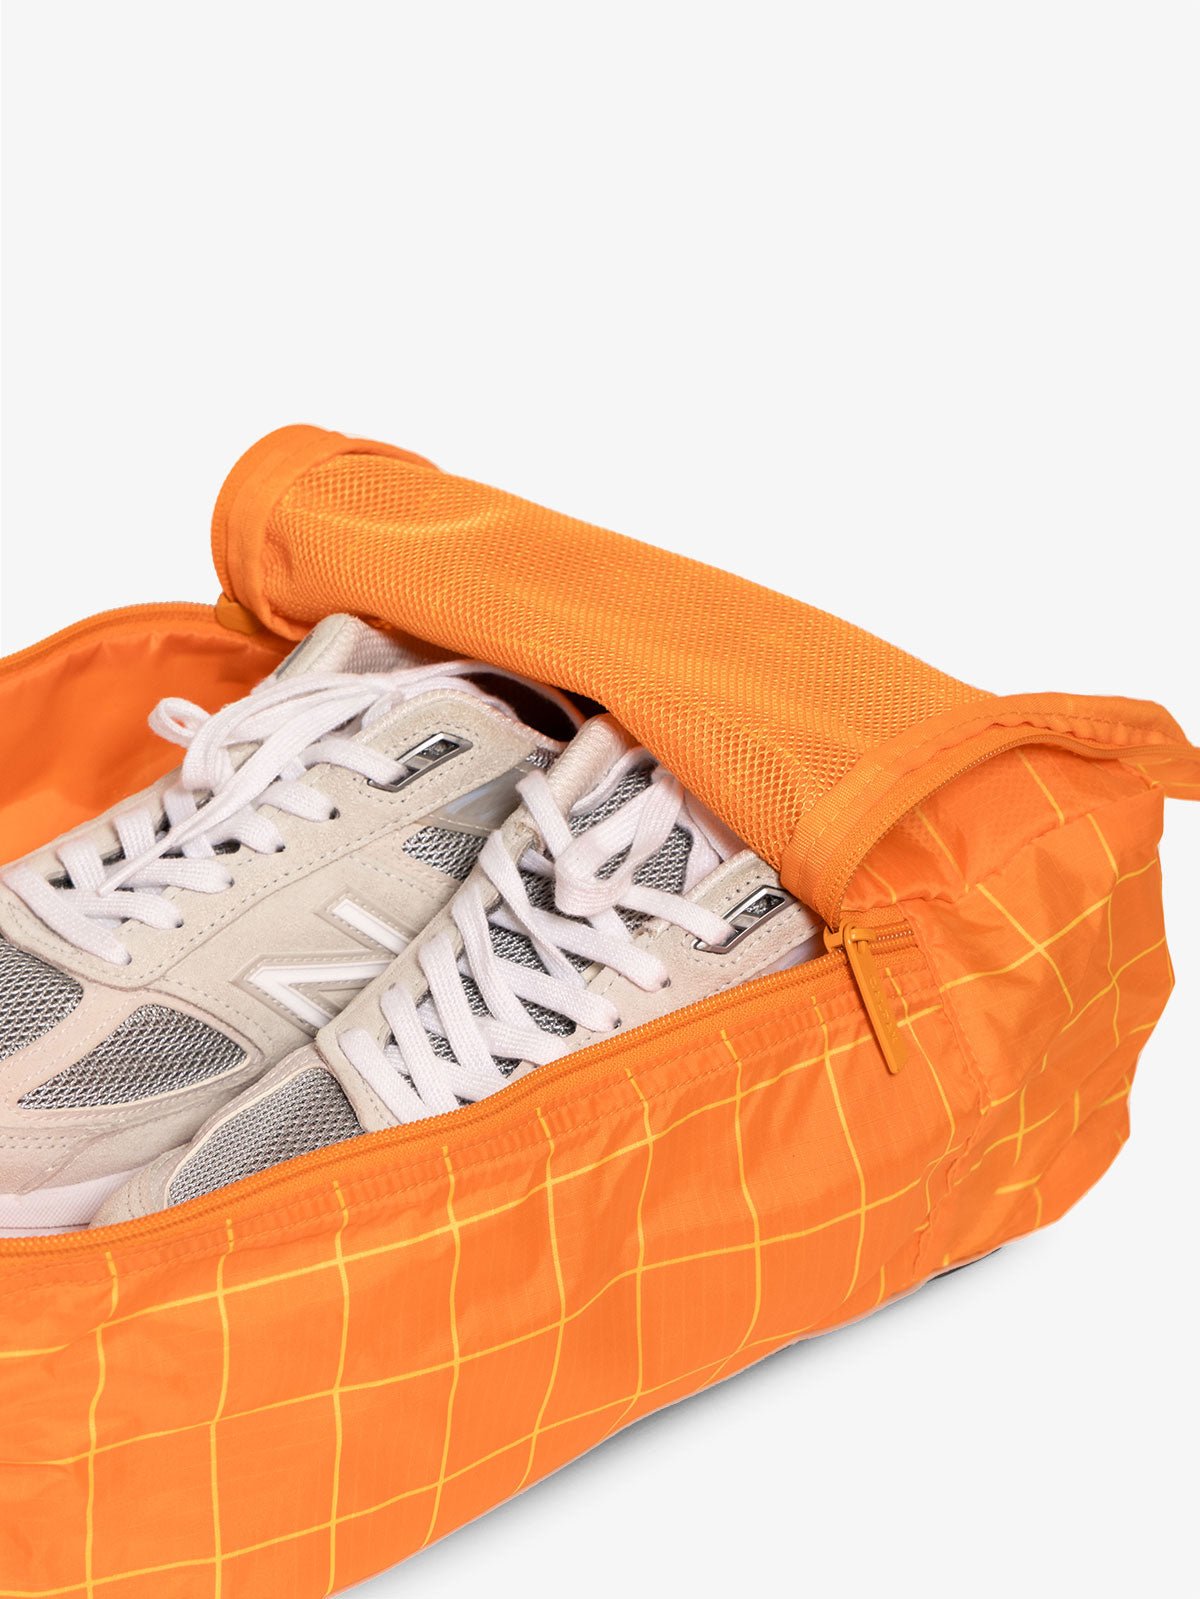 CALPAK Compakt zippered shoe travel bag with mesh pocket in orange grid